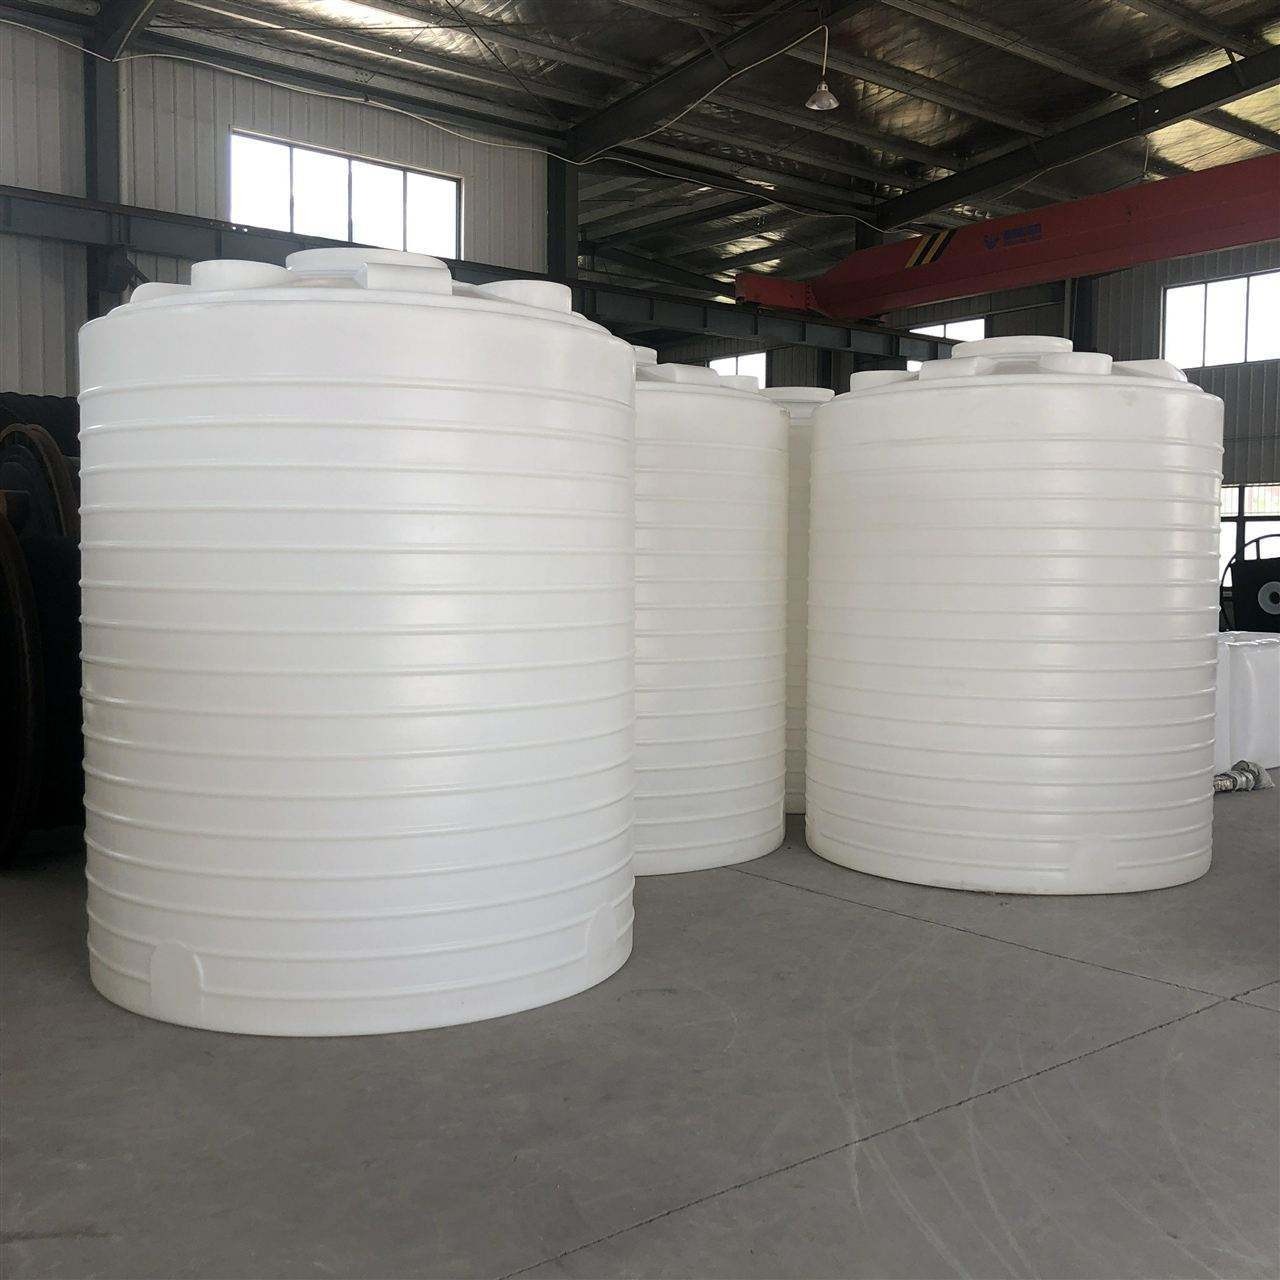 20方双氧水储罐大桶pe材质 20吨酸碱储罐厂家佳士德品牌图片